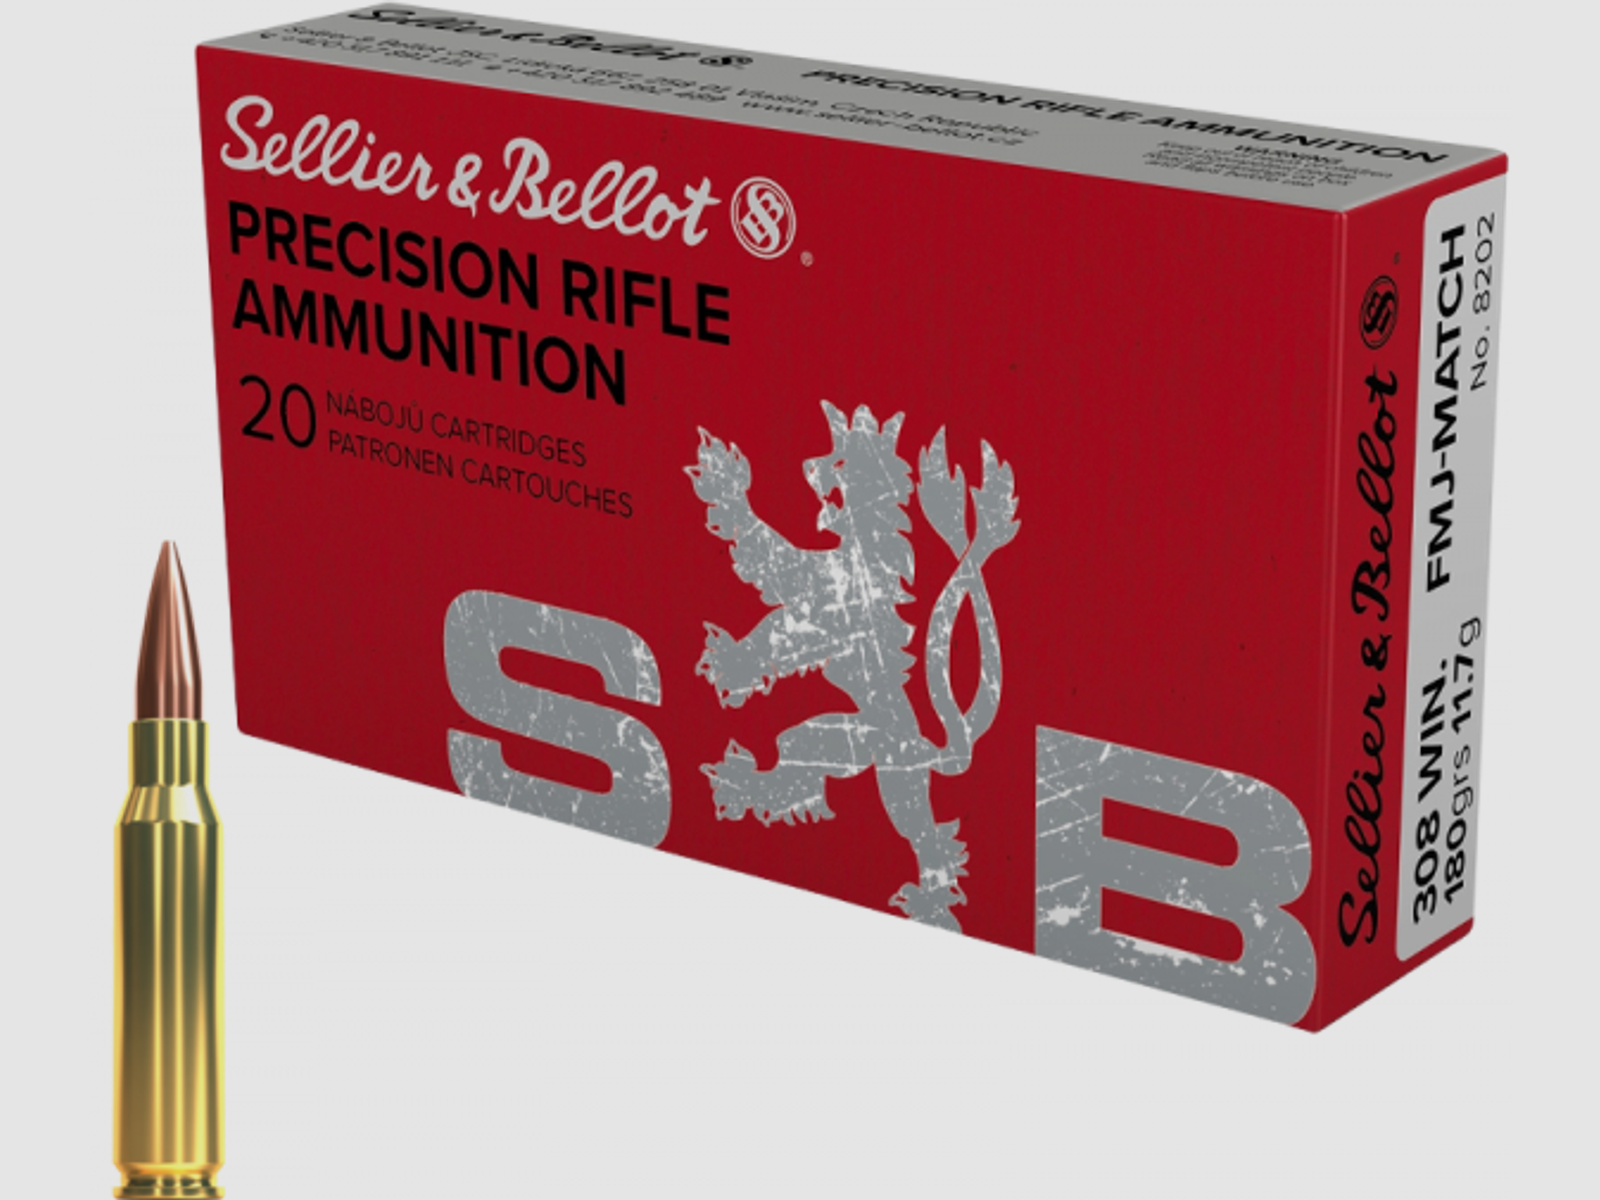 Sellier & Bellot Target Match .308 Win BTFMJ 180 grs Büchsenpatronen